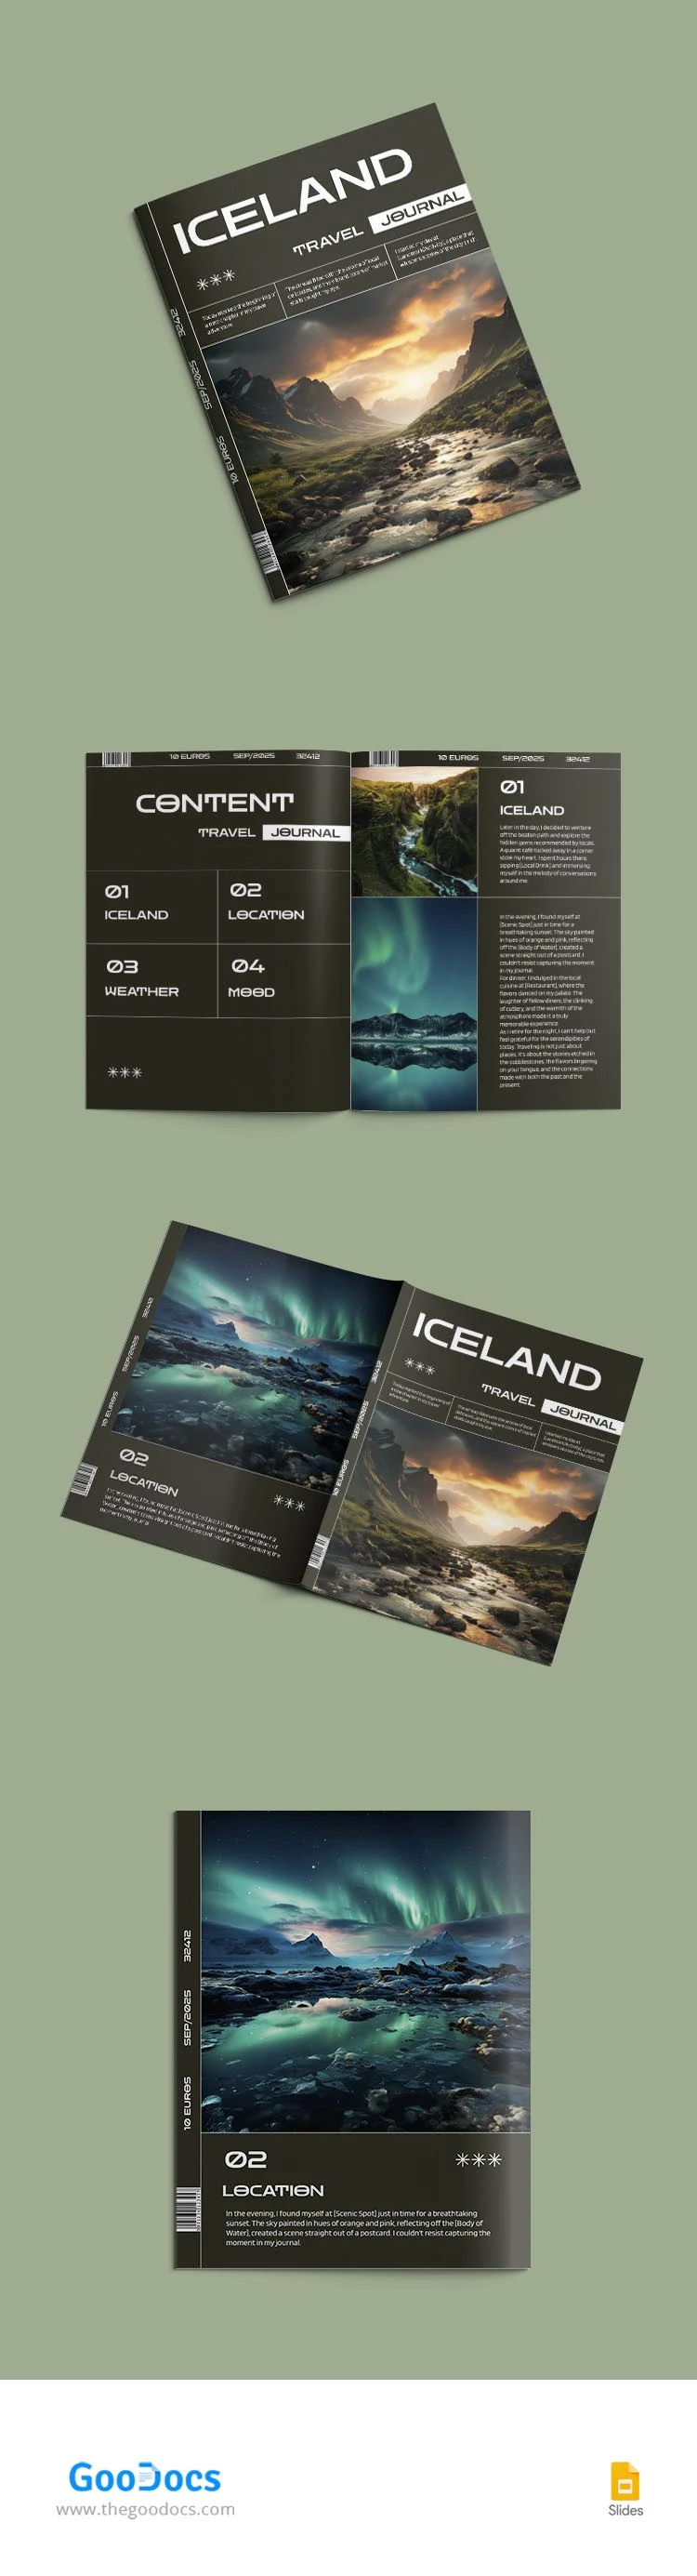 Diário da Islândia - free Google Docs Template - 10067513